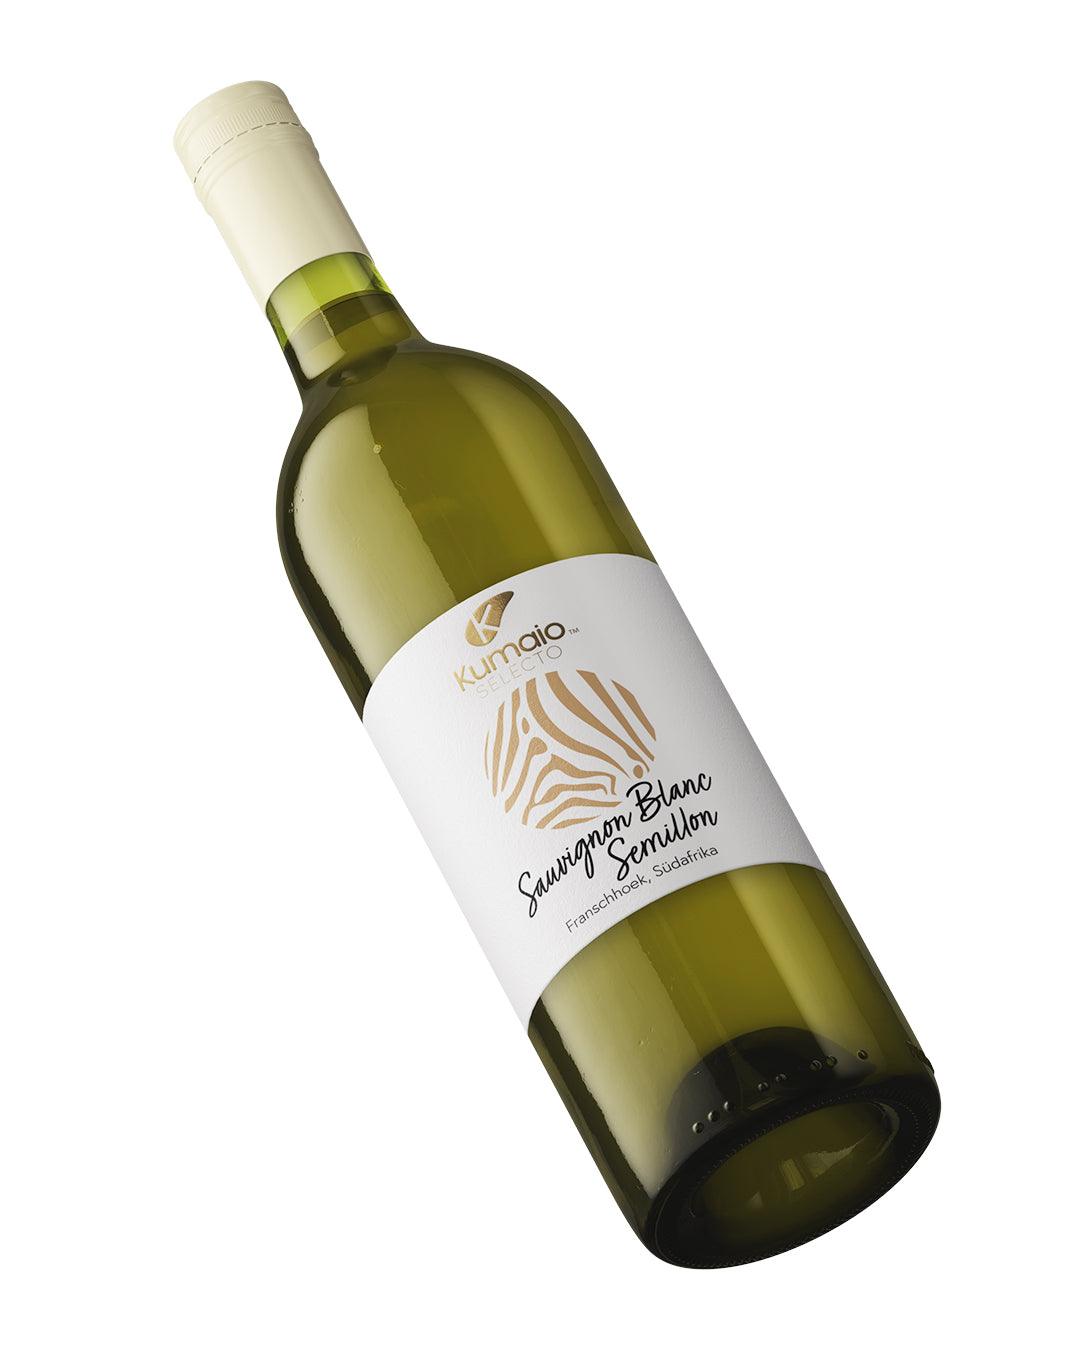 SEMILLON Kumaio™ Selecto I weißer Wein, trocken BLANC SAUVIGNON – Südafrika aus